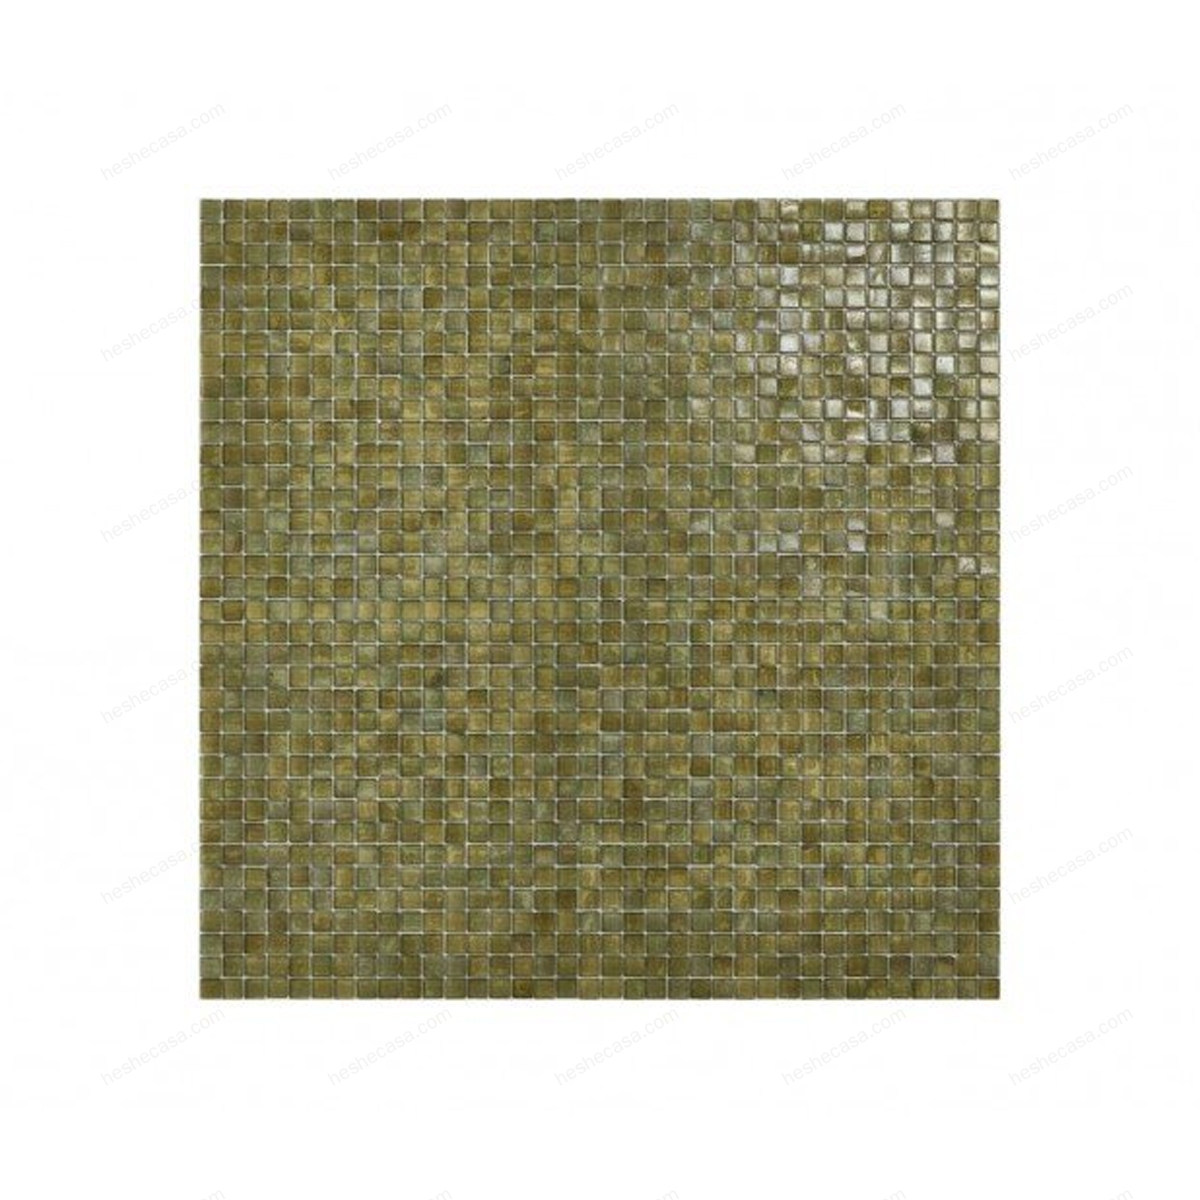 Moss瓷砖